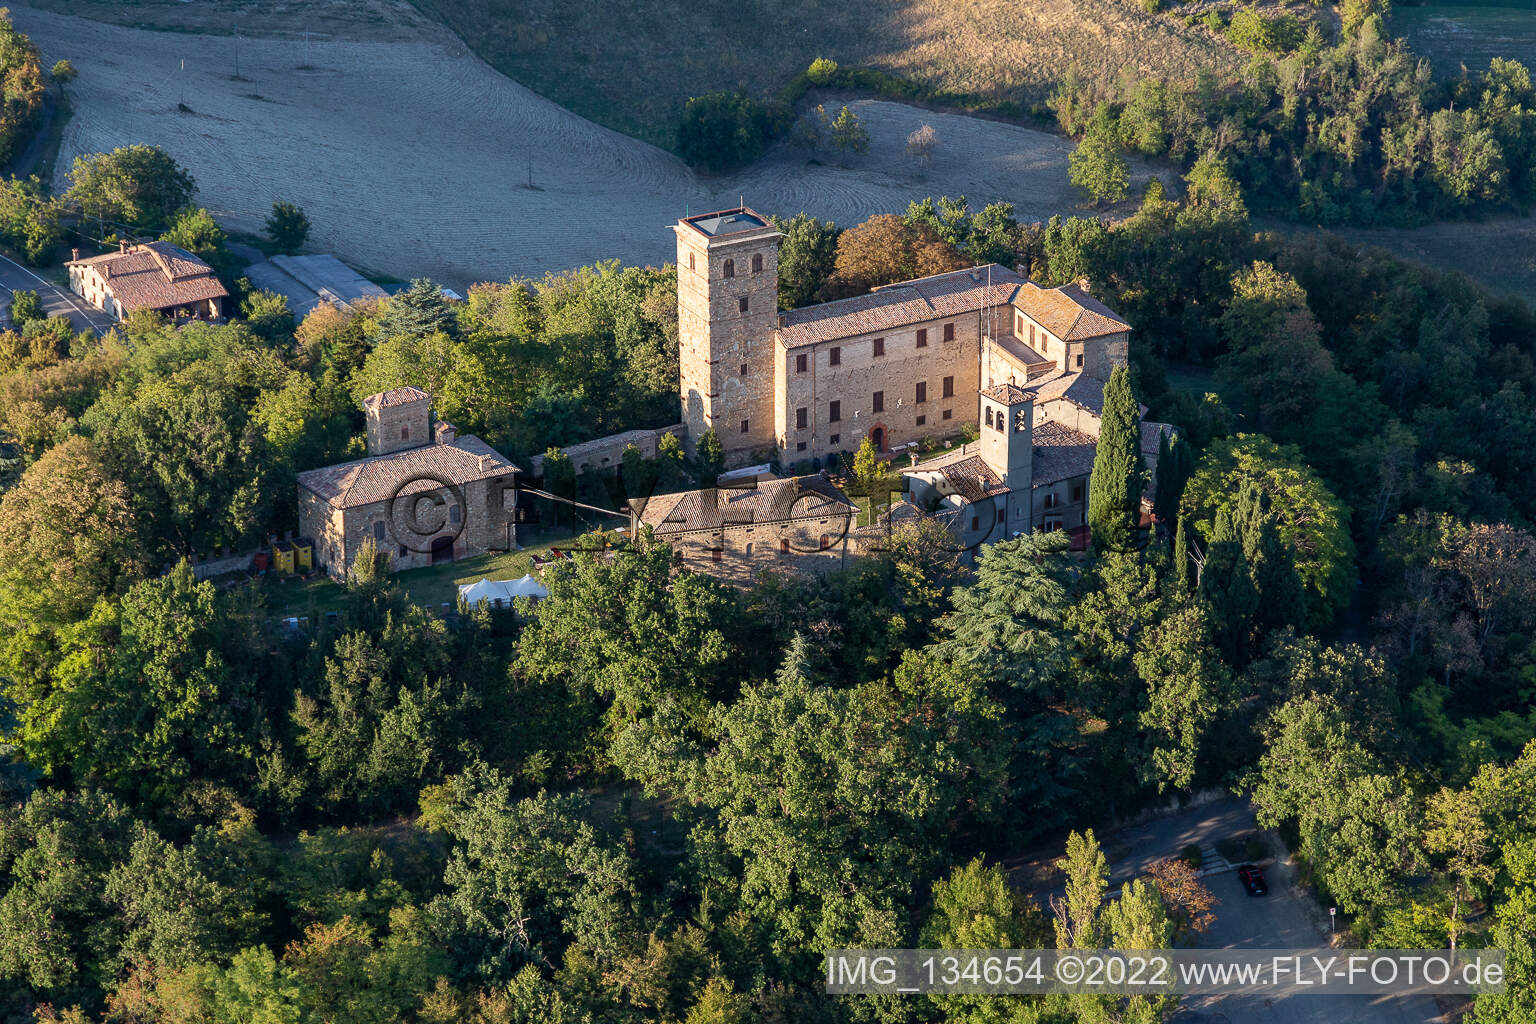 Château de Montegibbio Château de Montegibbio à Sassuolo dans le département Modena, Italie hors des airs